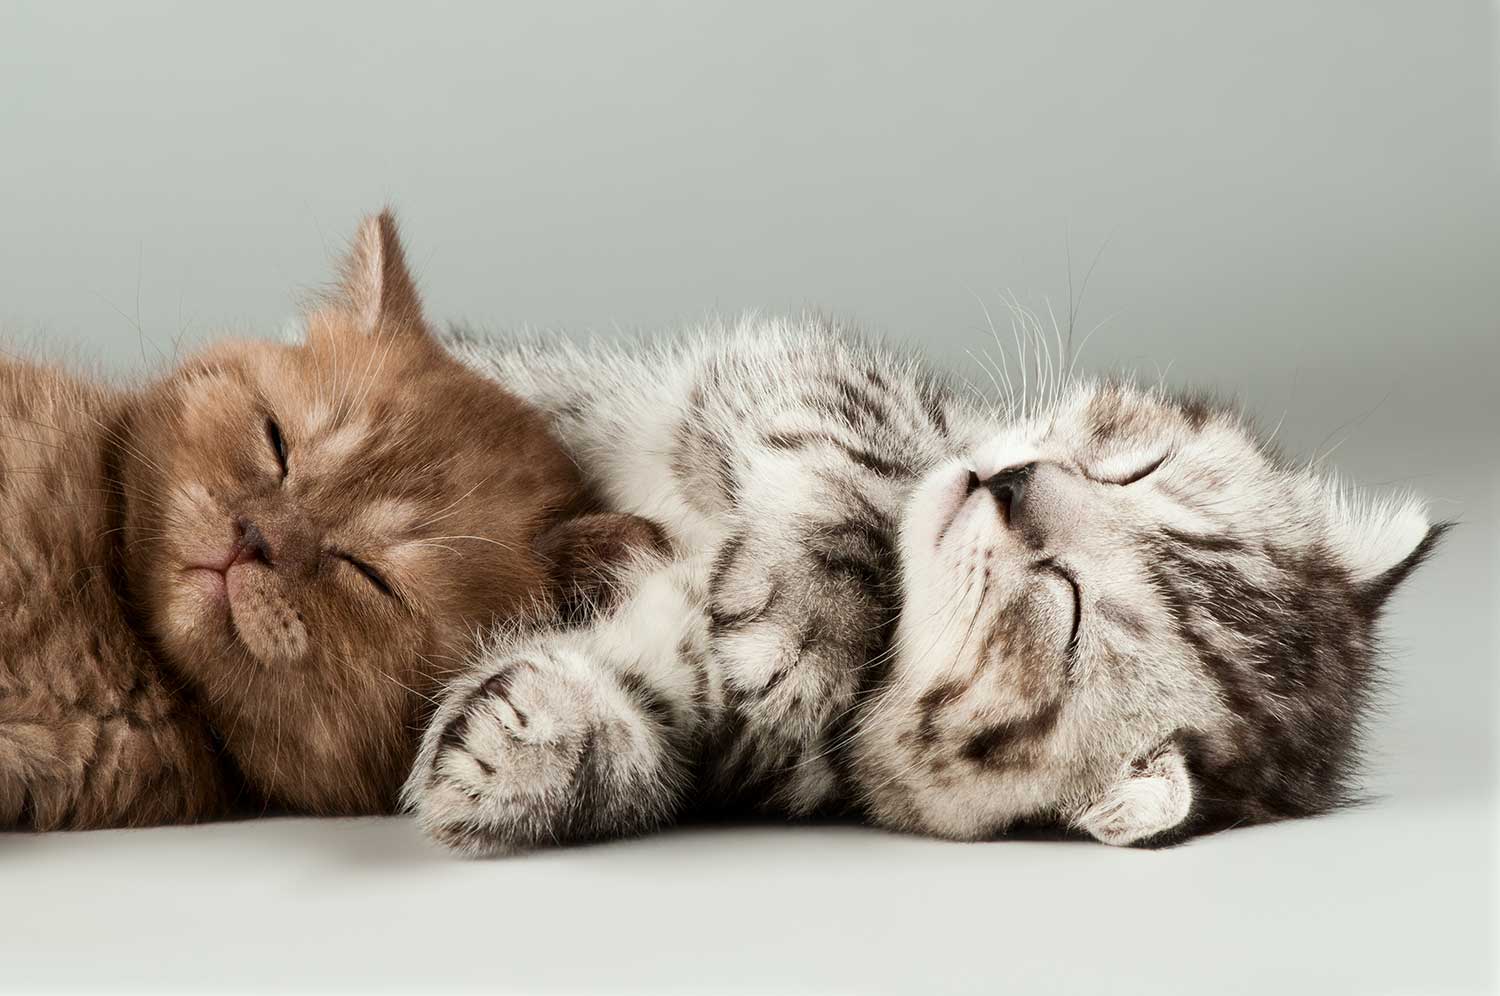 Cute kittens sleeping